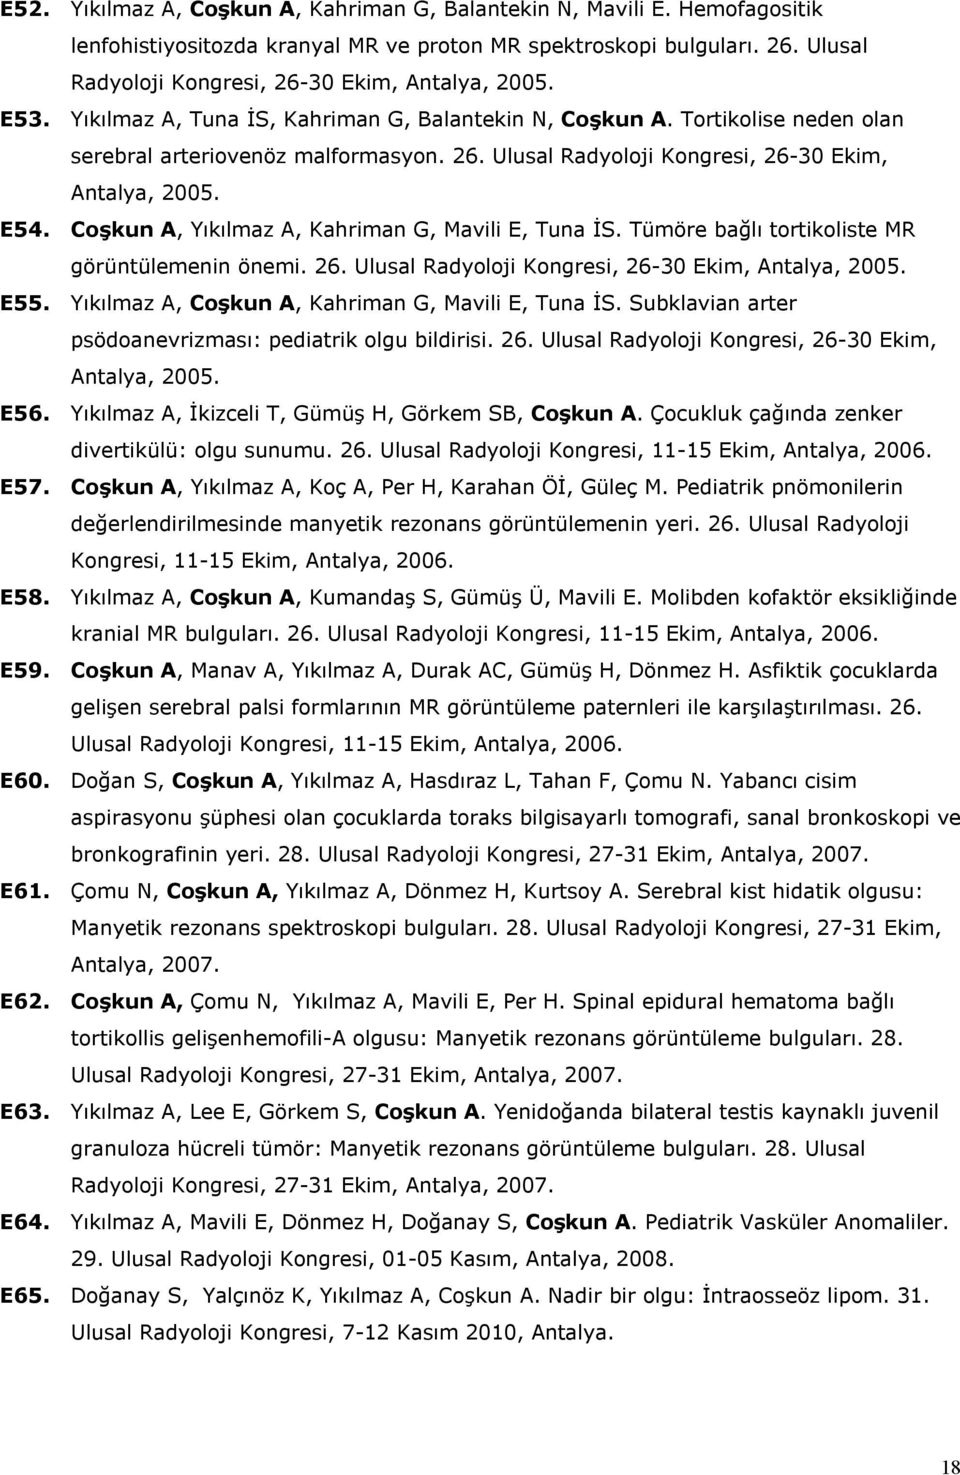 E54. Coşkun A, Yıkılmaz A, Kahriman G, Mavili E, Tuna İS. Tümöre bağlı tortikoliste MR görüntülemenin önemi. 26. Ulusal Radyoloji Kongresi, 26-30 Ekim, Antalya, 2005. E55.